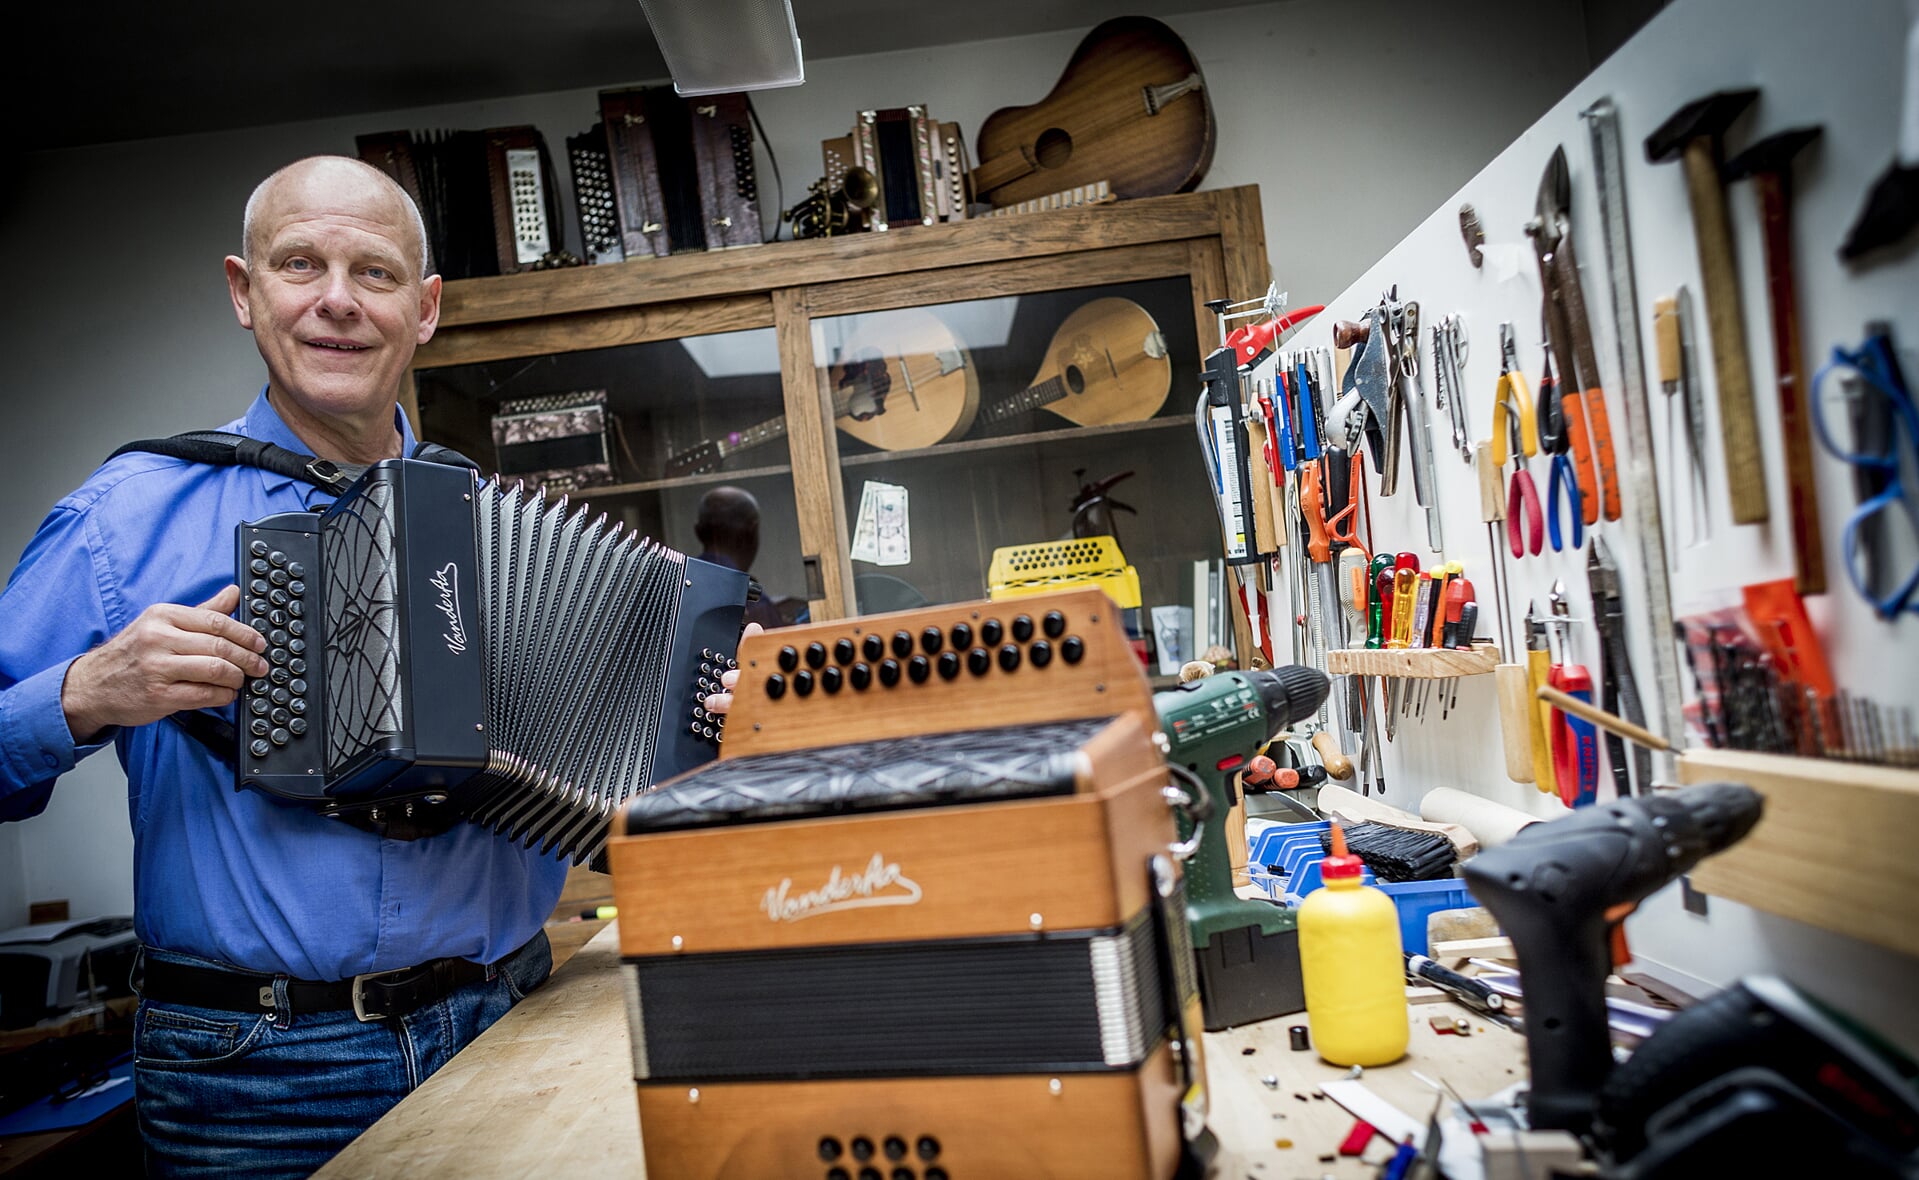 Frans van der Aa maakt al 42 jaar accordeons. Zijn clientèle komt van over de hele wereld, met Carel Craayenhof als misschien wel zijn bekendste klant. Zijn atelier heeft hij sinds 2012 gewoon aan huis.